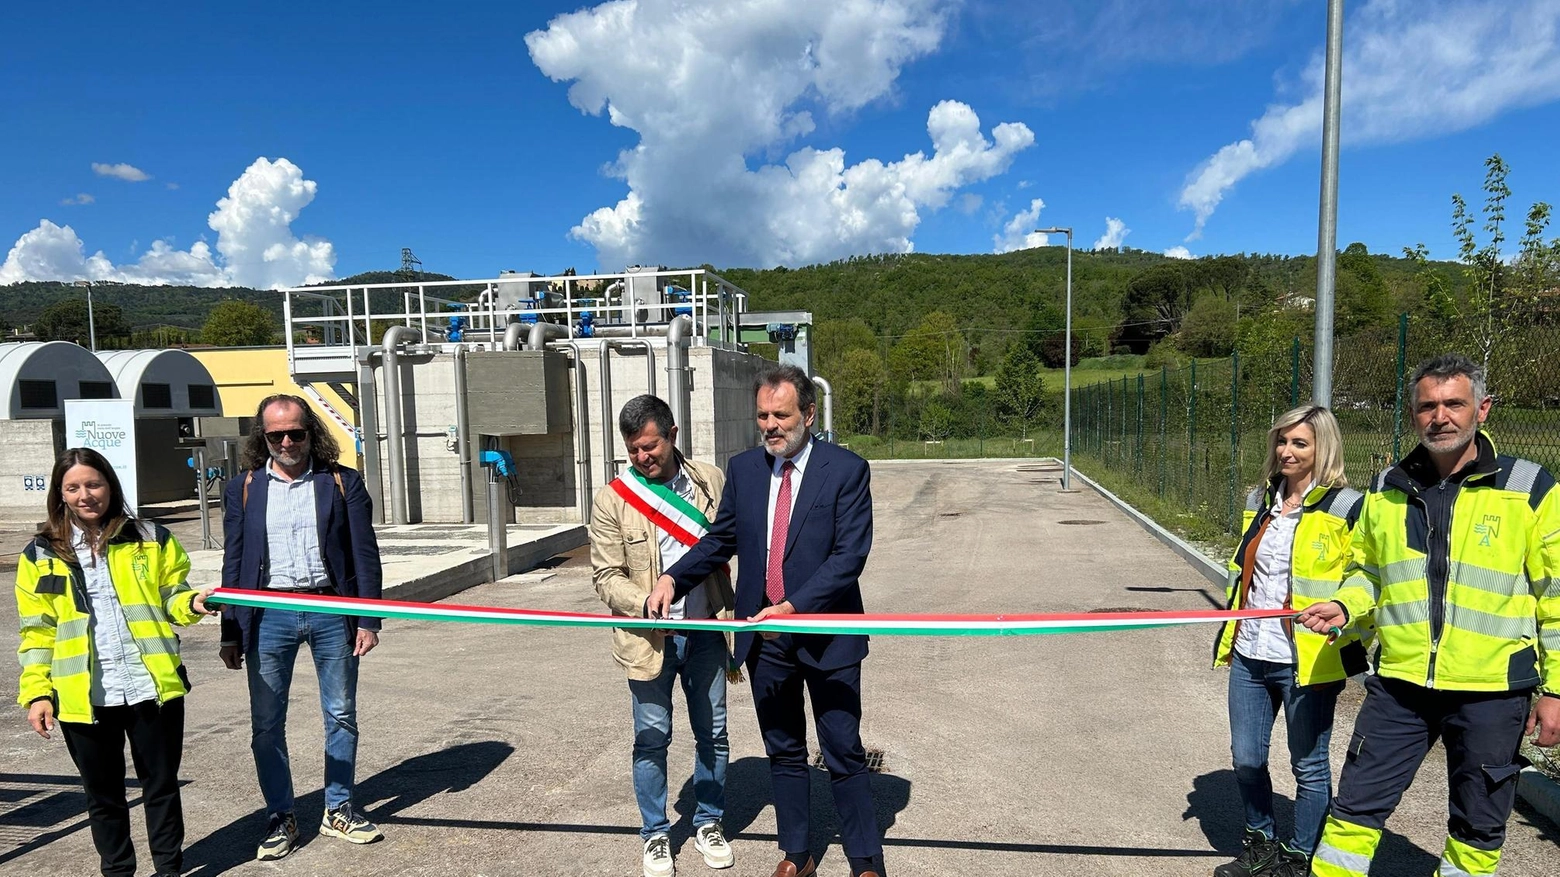 Nuovo impianto di depurazione inaugurato ad Ambra, Bucine, per servire 1.200 abitanti. Costo 1,5 milioni di euro. Tecnologie avanzate per trattare i reflui e preservare l'ambiente.